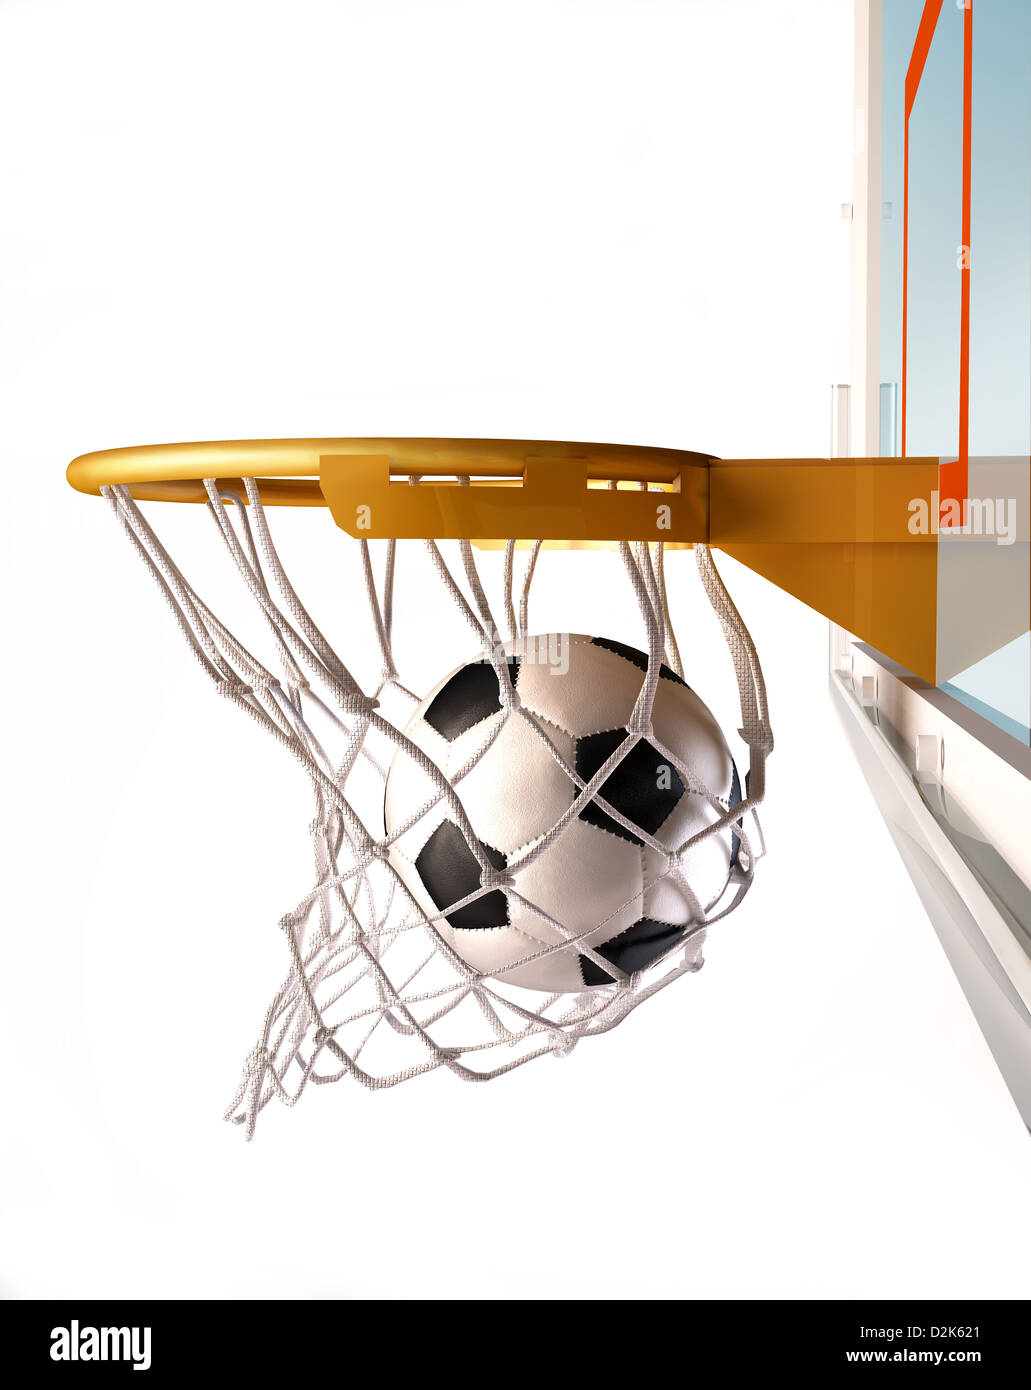 Ballon de soccer en centrant le panier de basket-ball), (avec la balle à l'intérieur du filet, vue rapprochée, sur fond blanc. Banque D'Images